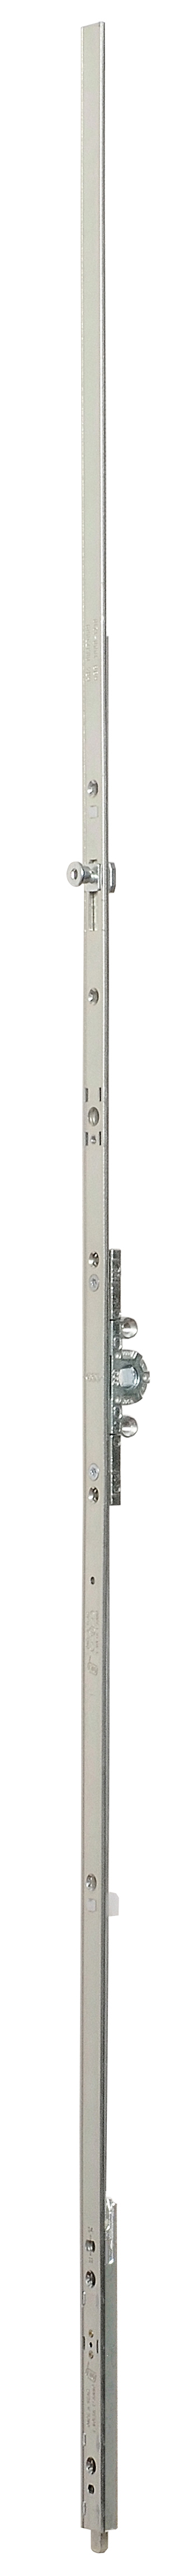 AGB -  Cremonese ARTECH anta a bandiera altezza maniglia fissa con puntale chiusura ad espansione per seconda anta - gr / dim. 01 - entrata 15 - alt. man. 170 - lbb/hbb 360 - 610